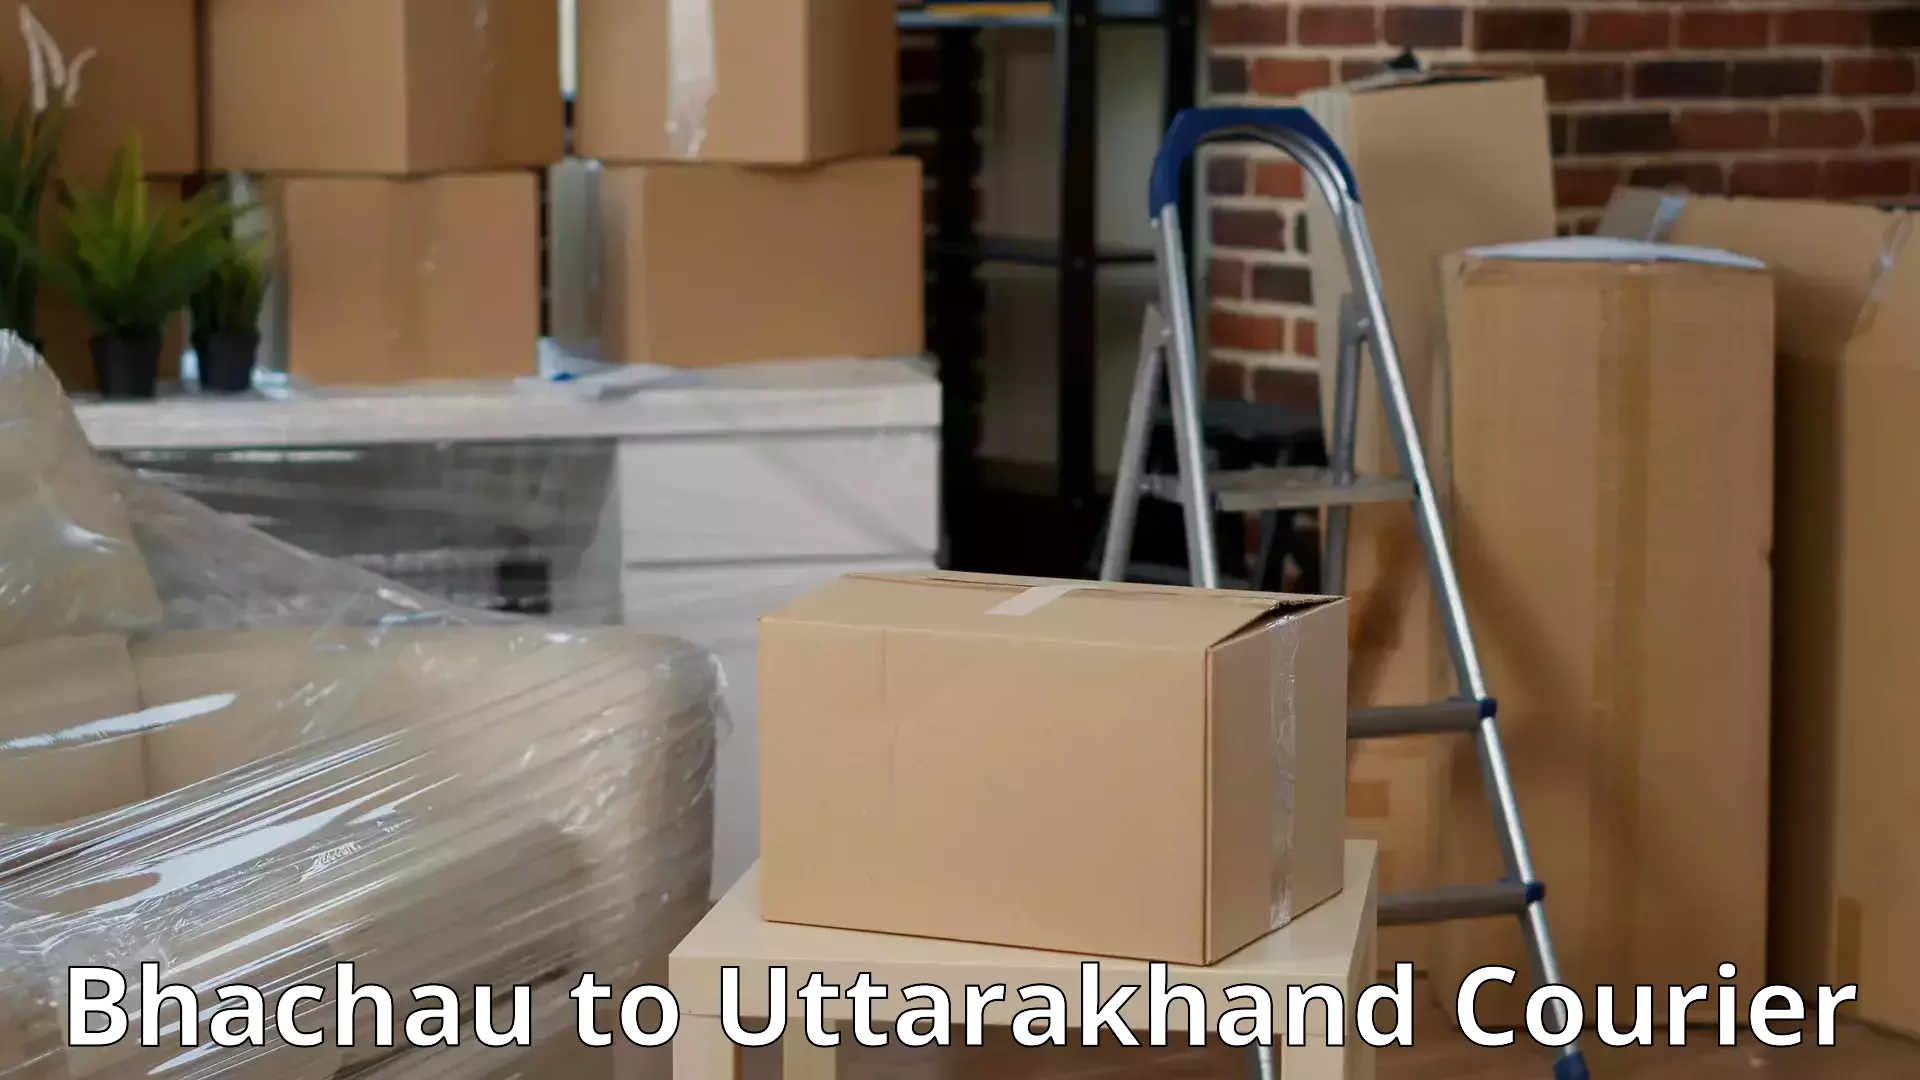 Efficient relocation services Bhachau to Uttarakhand